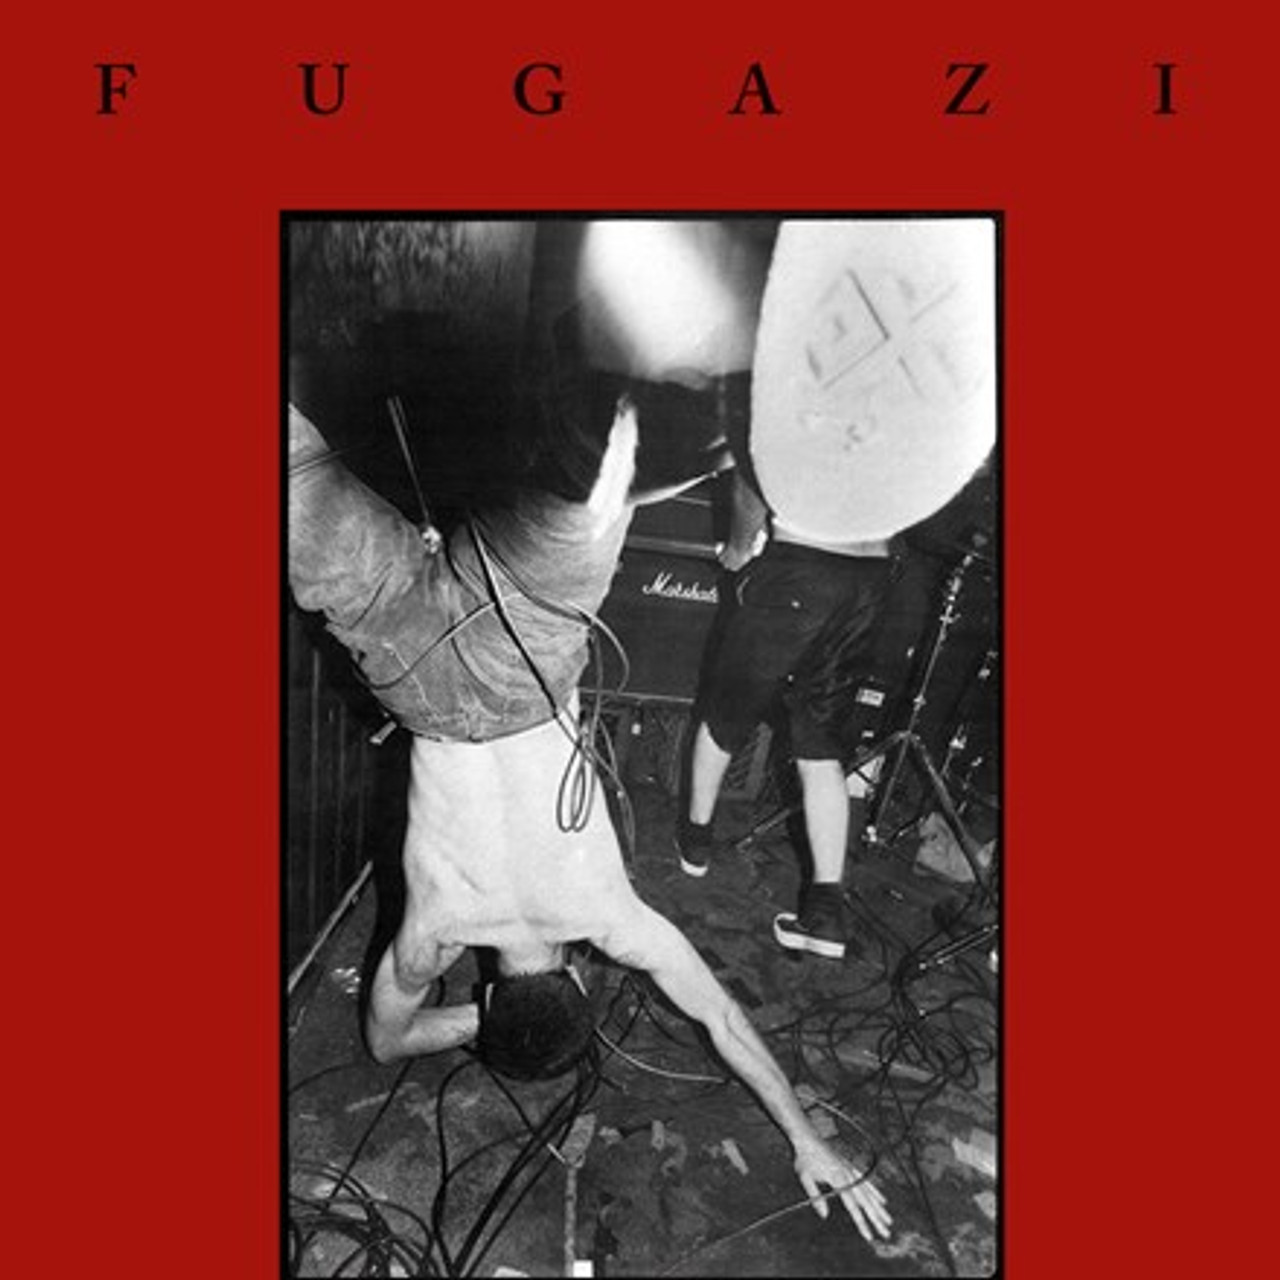 - Direct Fugazi LP) - Music Fugazi (Vinyl